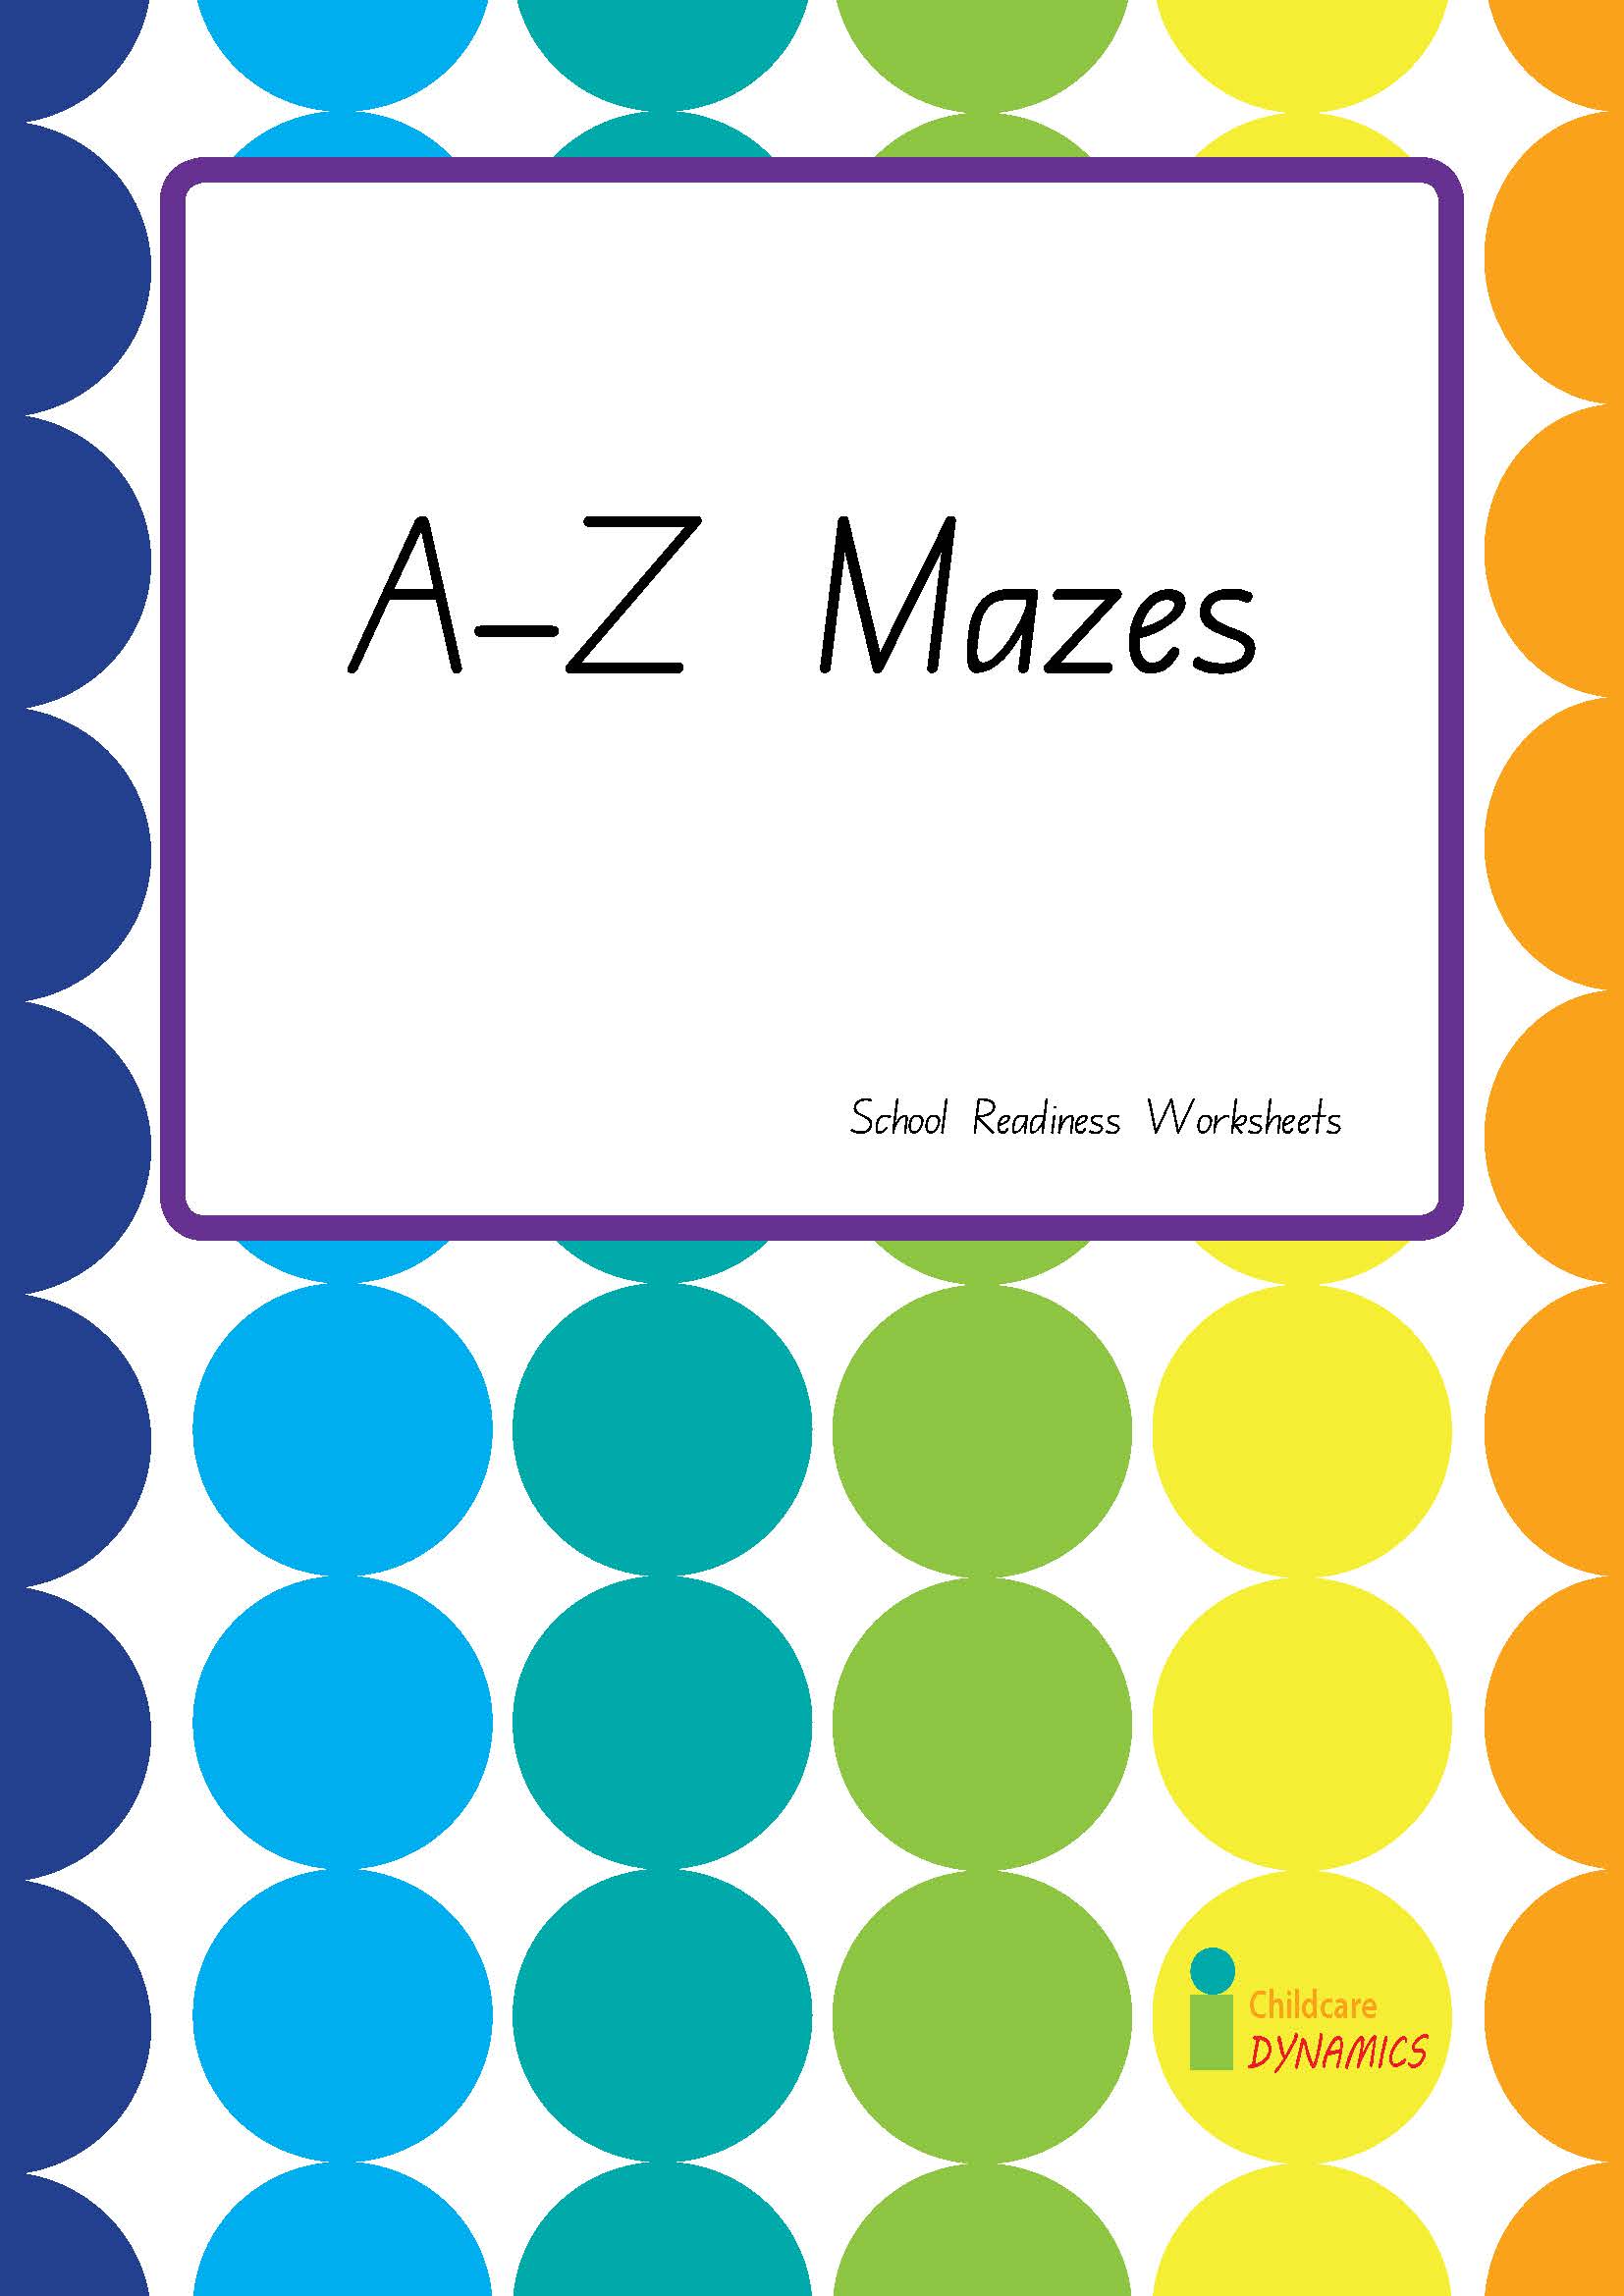 A-Z Mazes